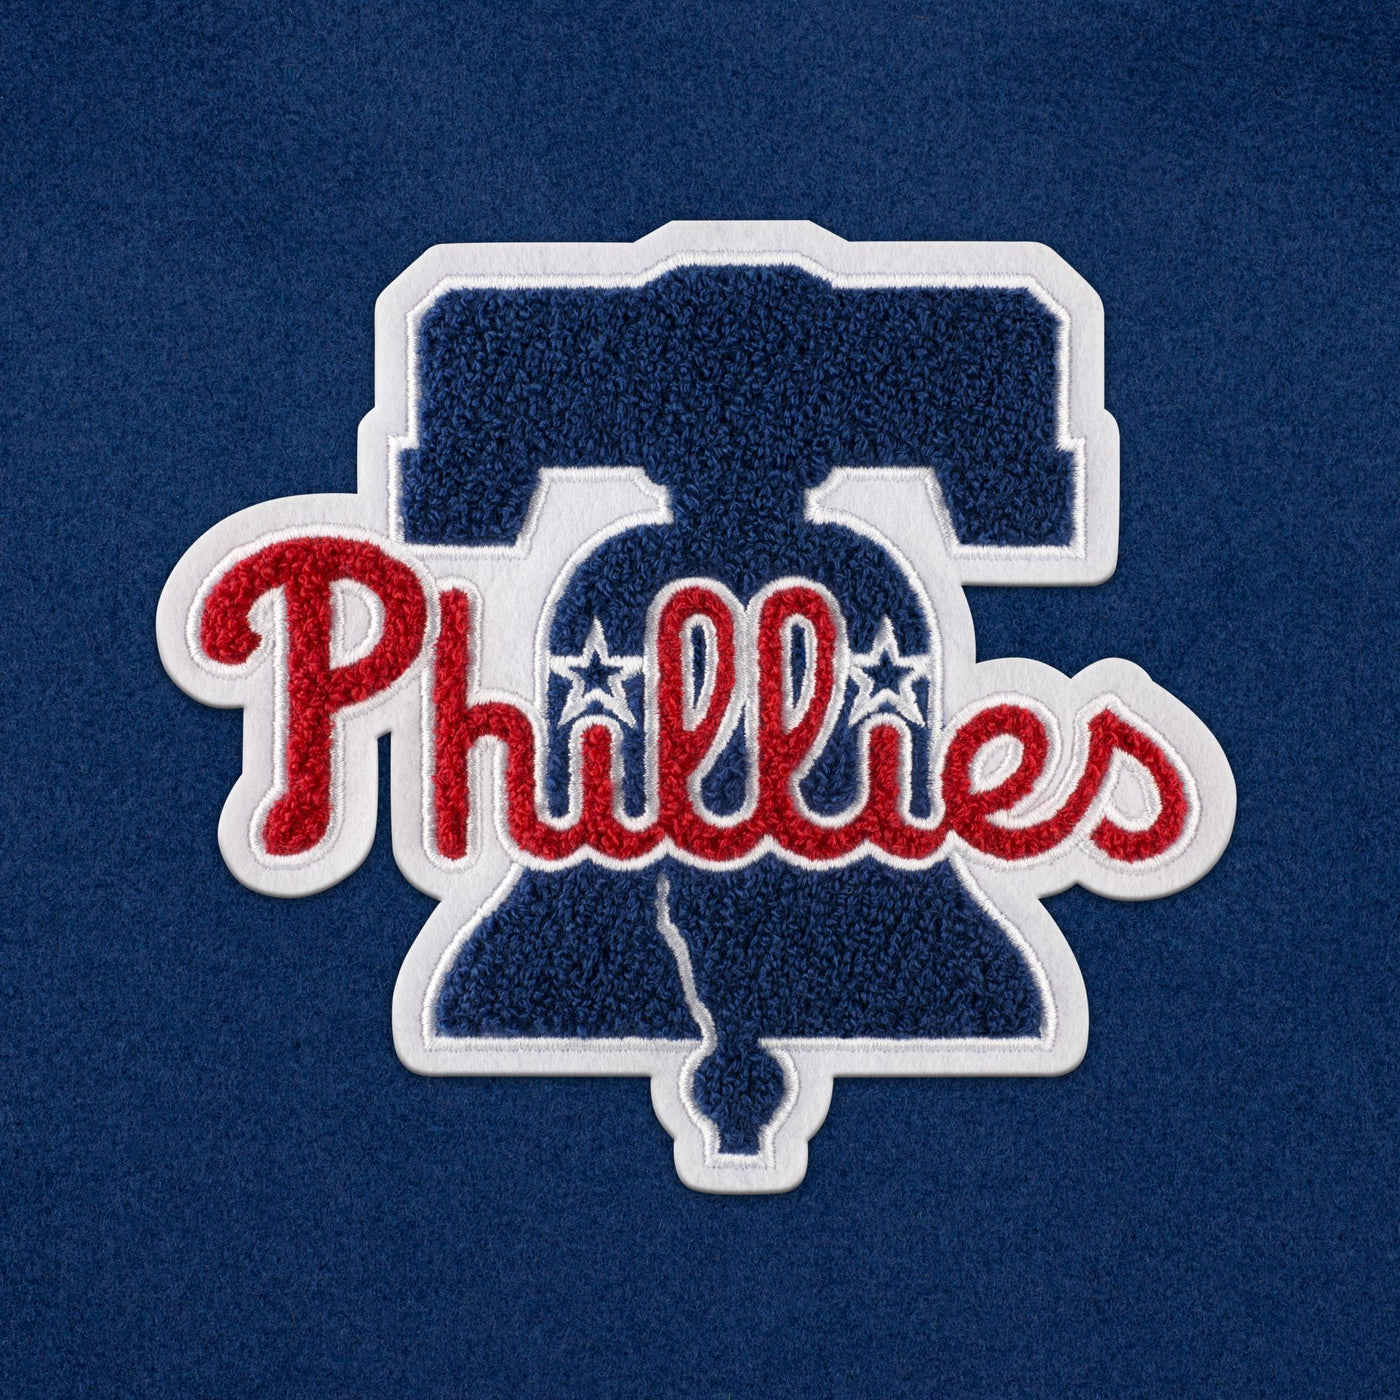 Philadelphia Phillies Weekender Duffle Bag